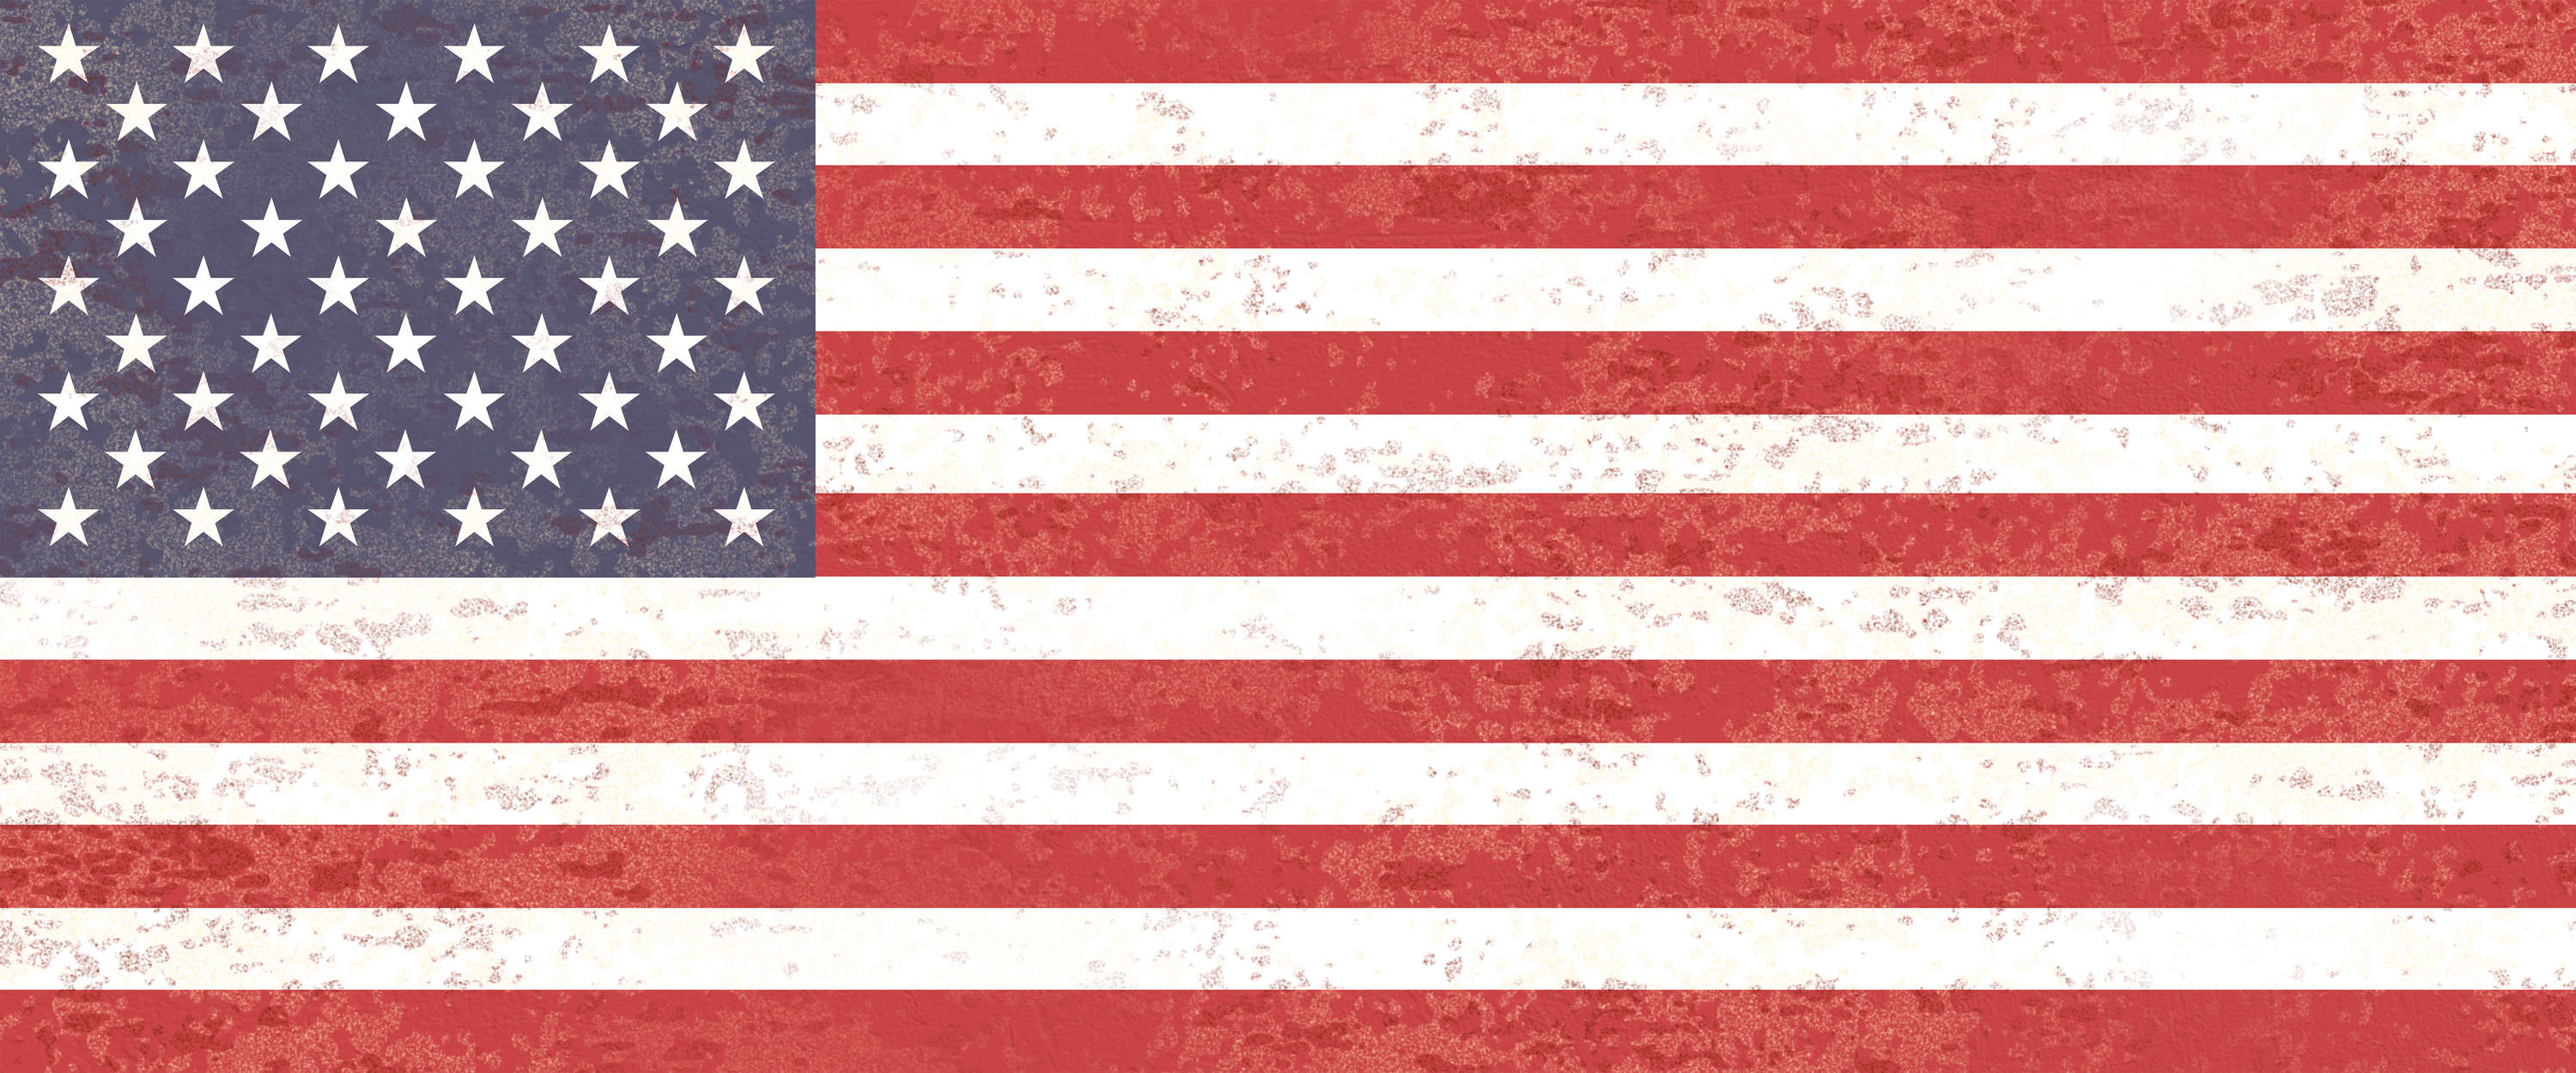             Fototapete Amerikanische Flagge – Sterne und Streifen
        